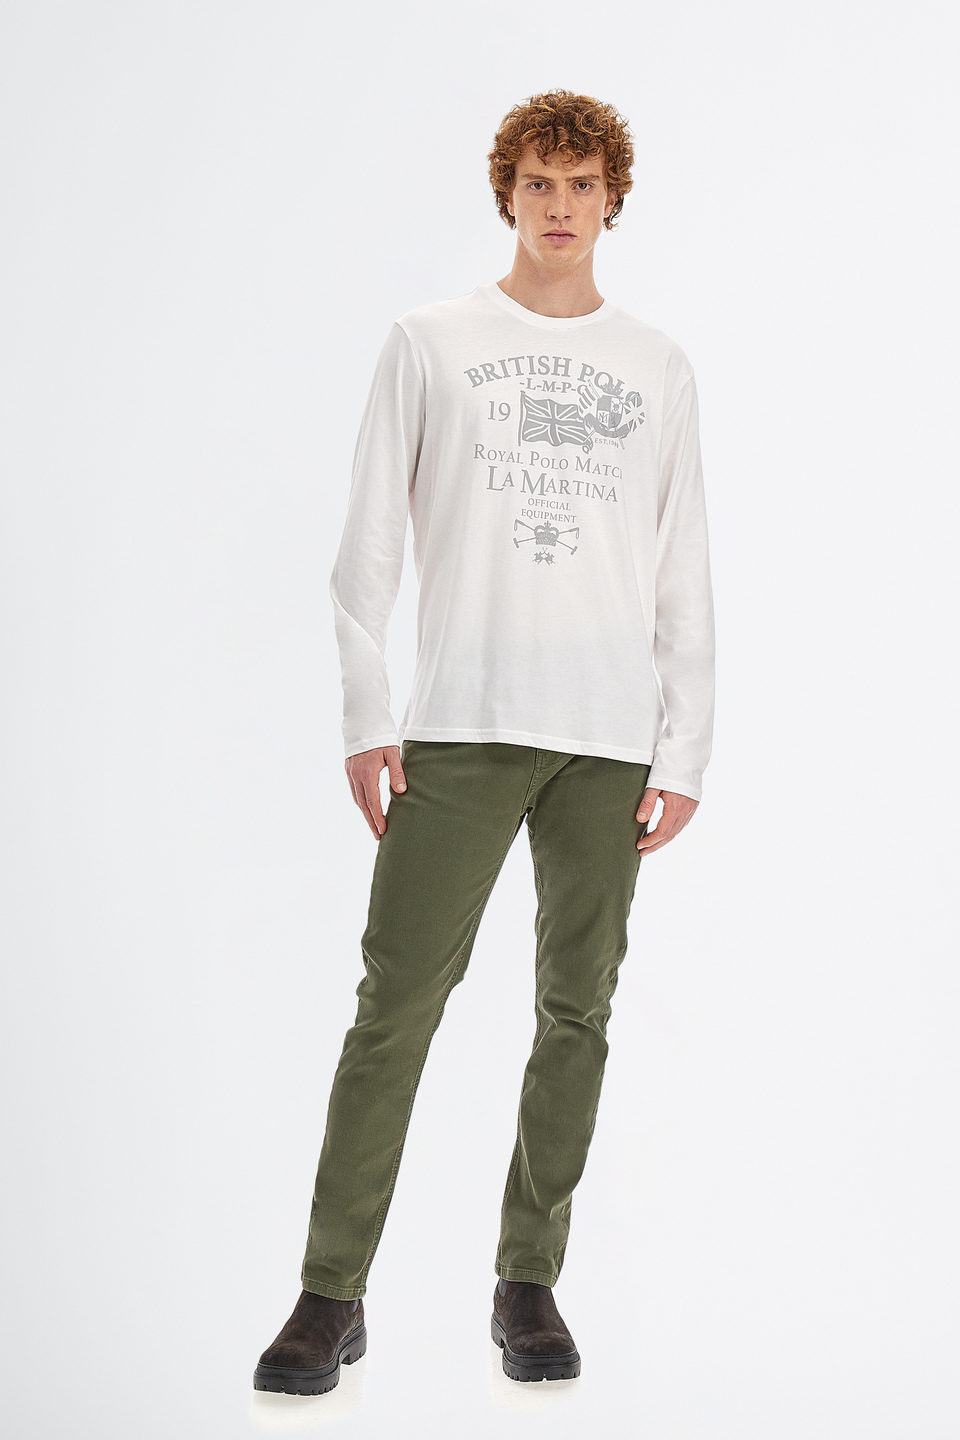 Camiseta de manga larga de algodón 100% regular para hombre | La Martina - Official Online Shop